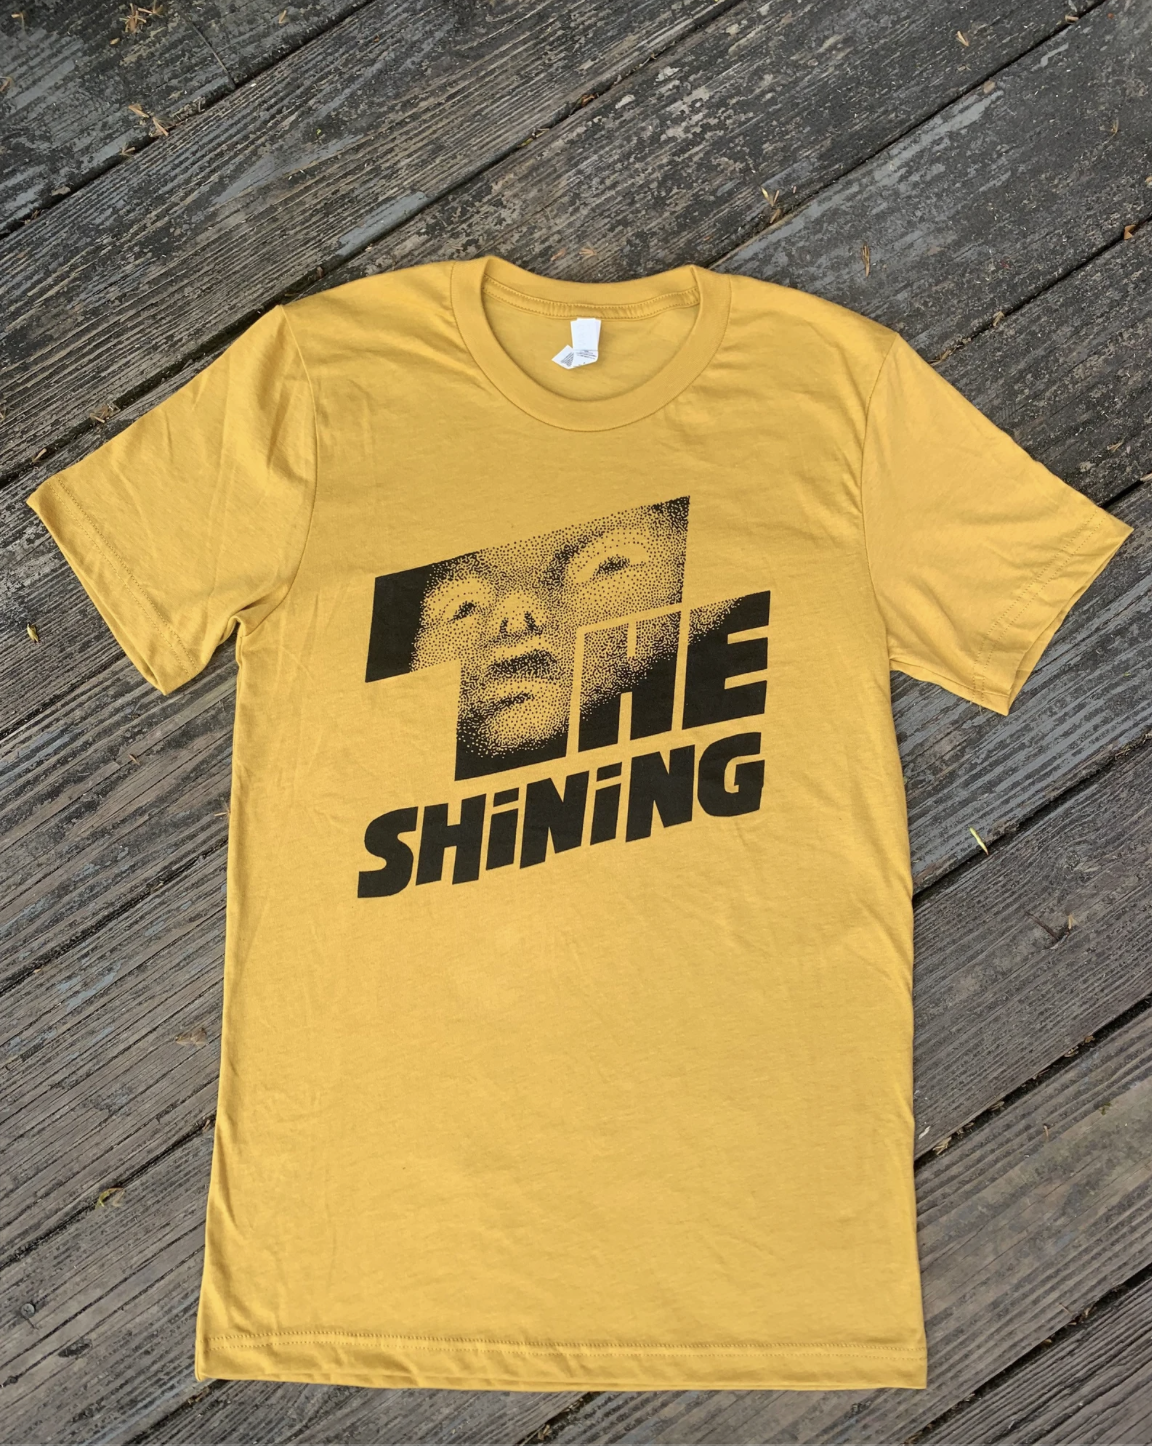 The Shining shirt